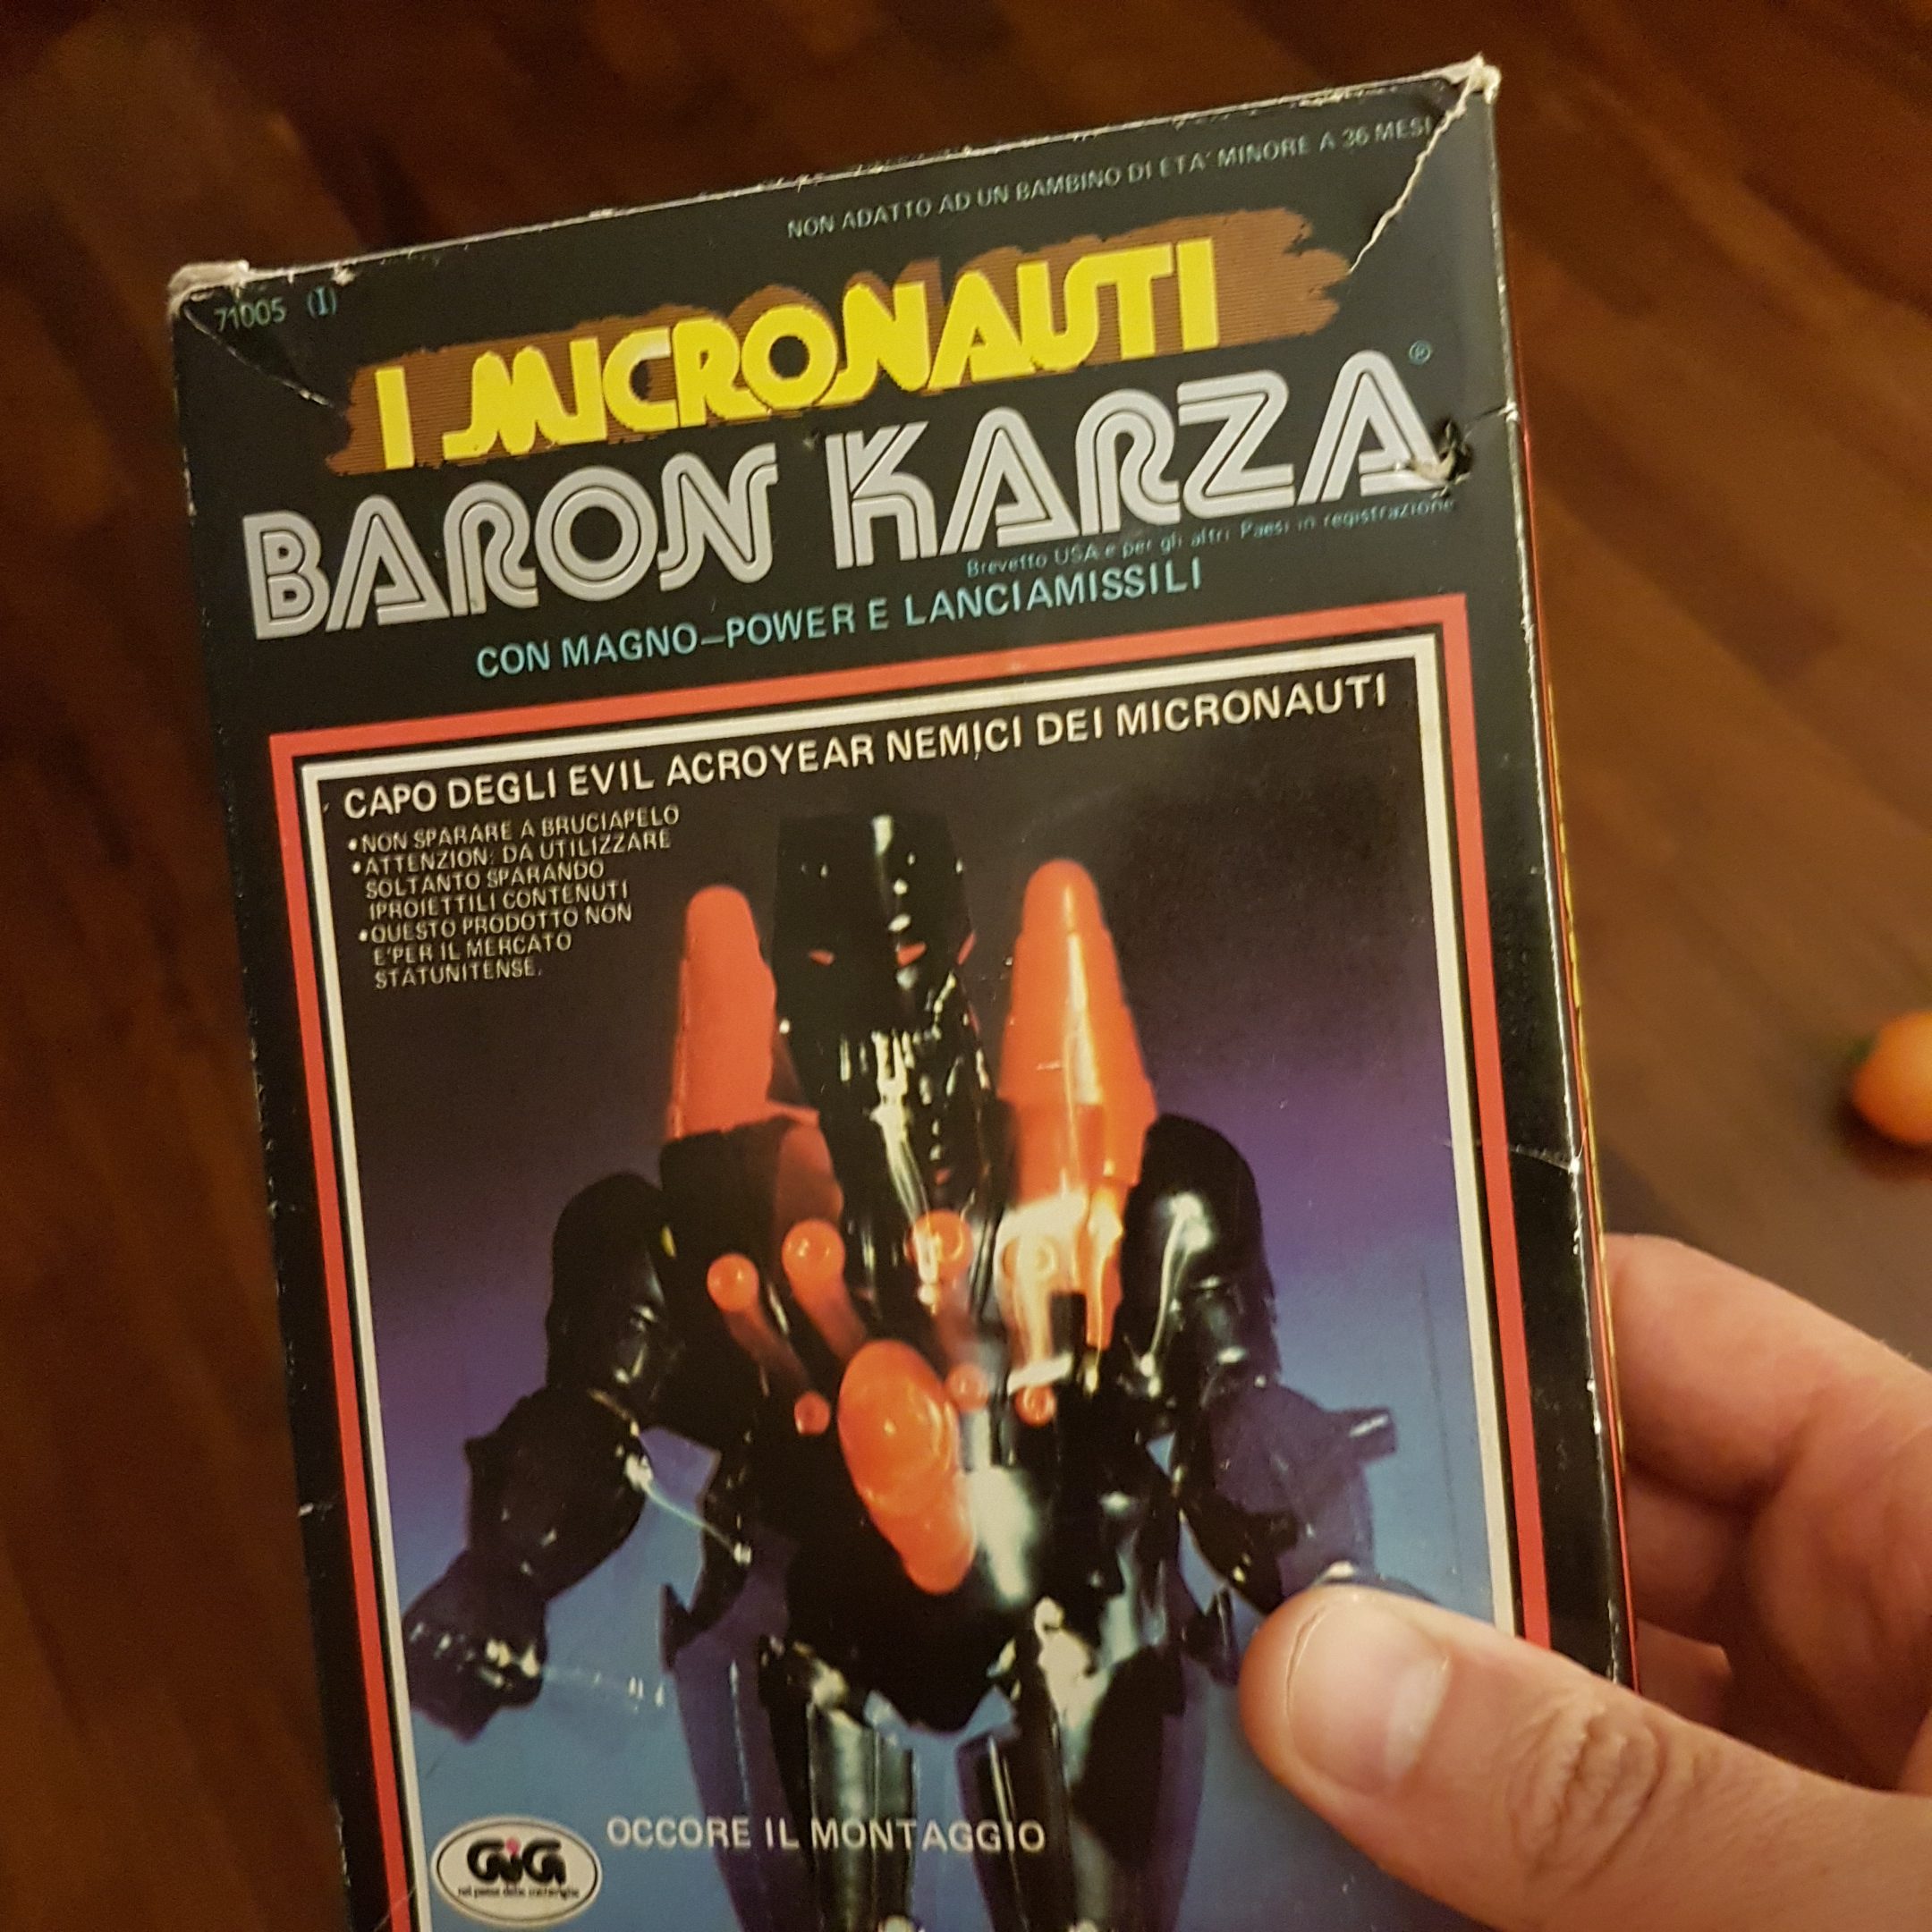 baron karza micronauti